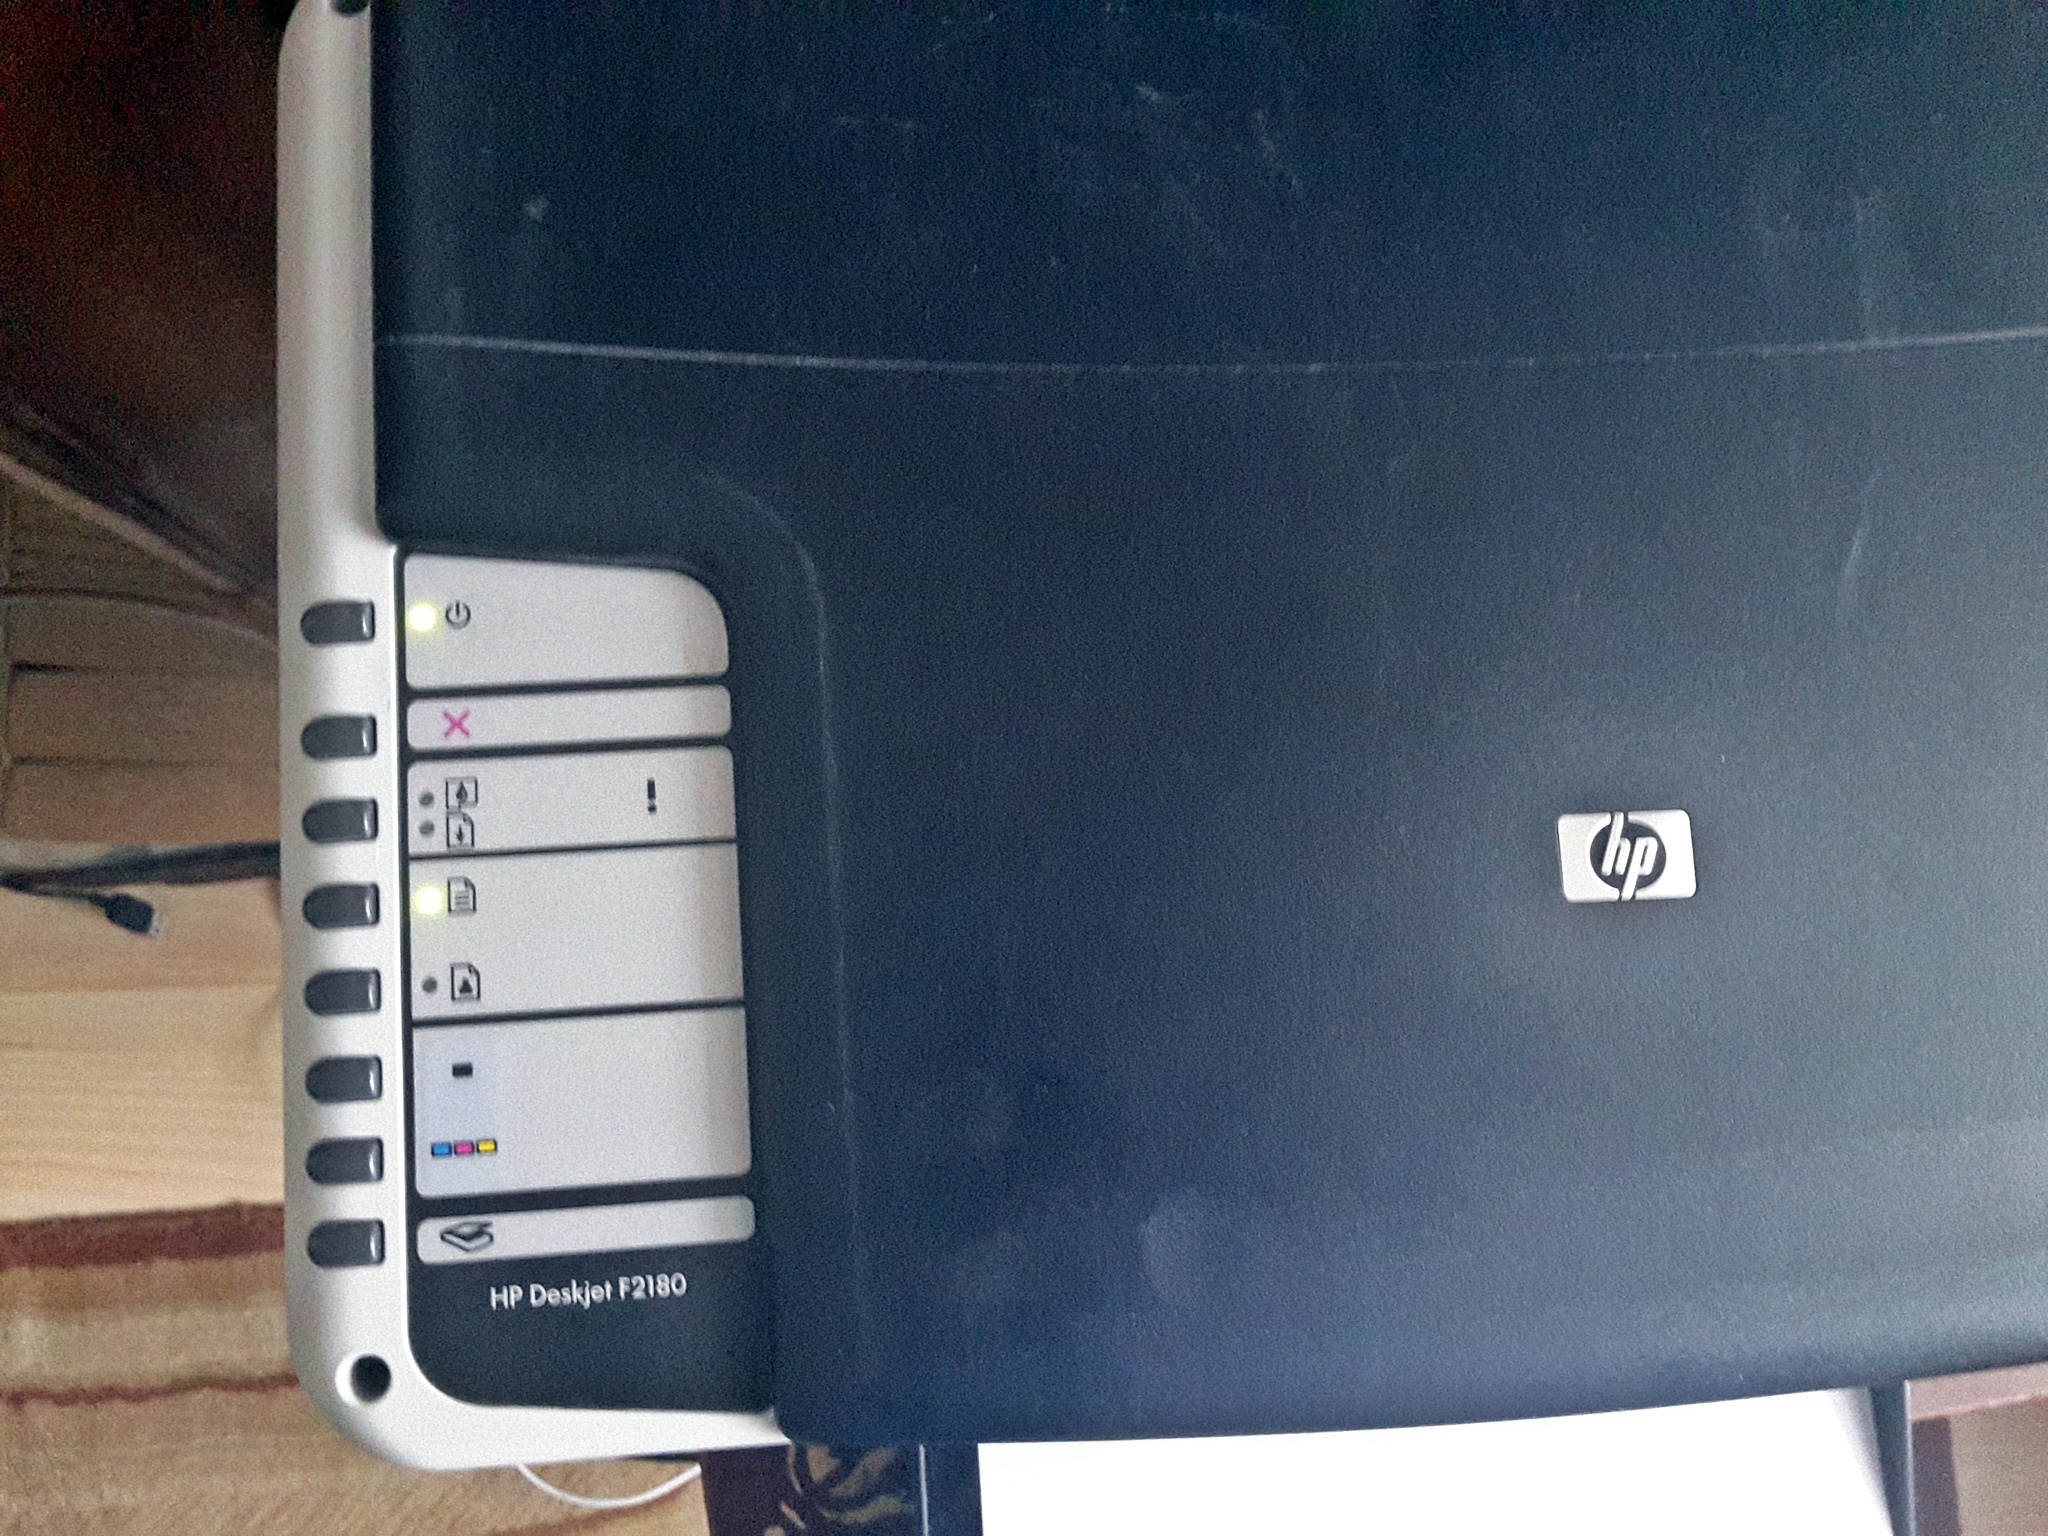  HP Deskjet F2180 Yazıcı Renkli Kartuşu Kullanmıyor